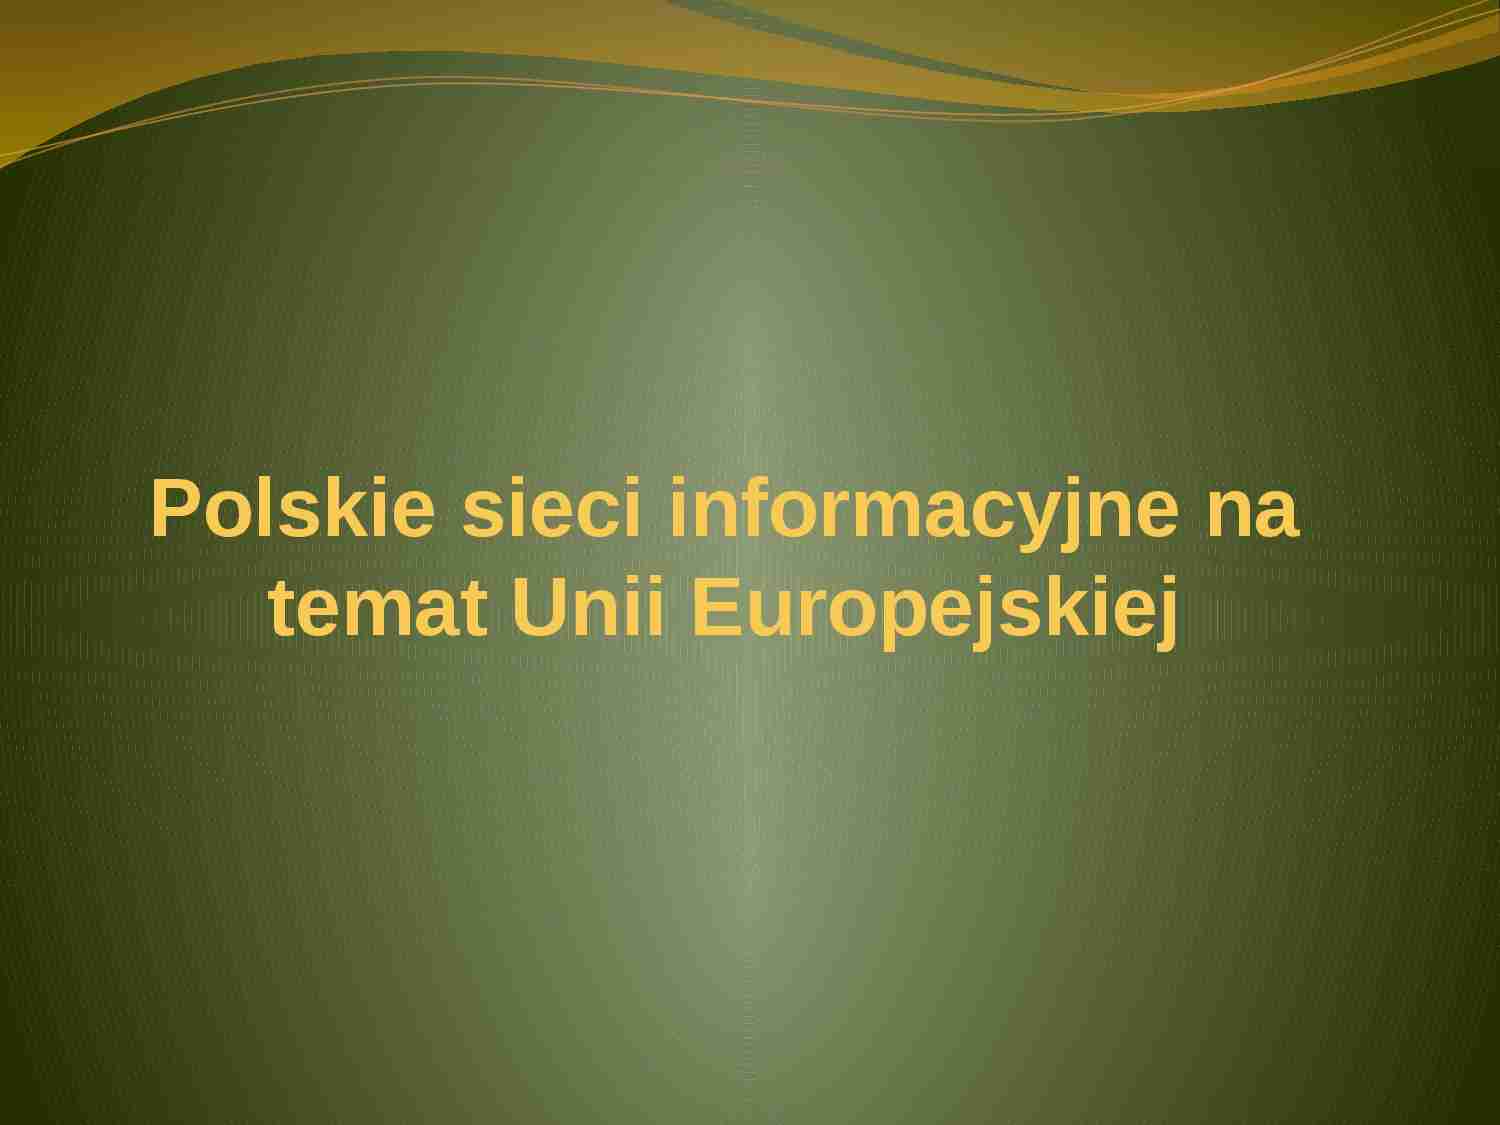 Polskie sieci informacyjne na temat Unii Europejskiej-prezentacja - strona 1